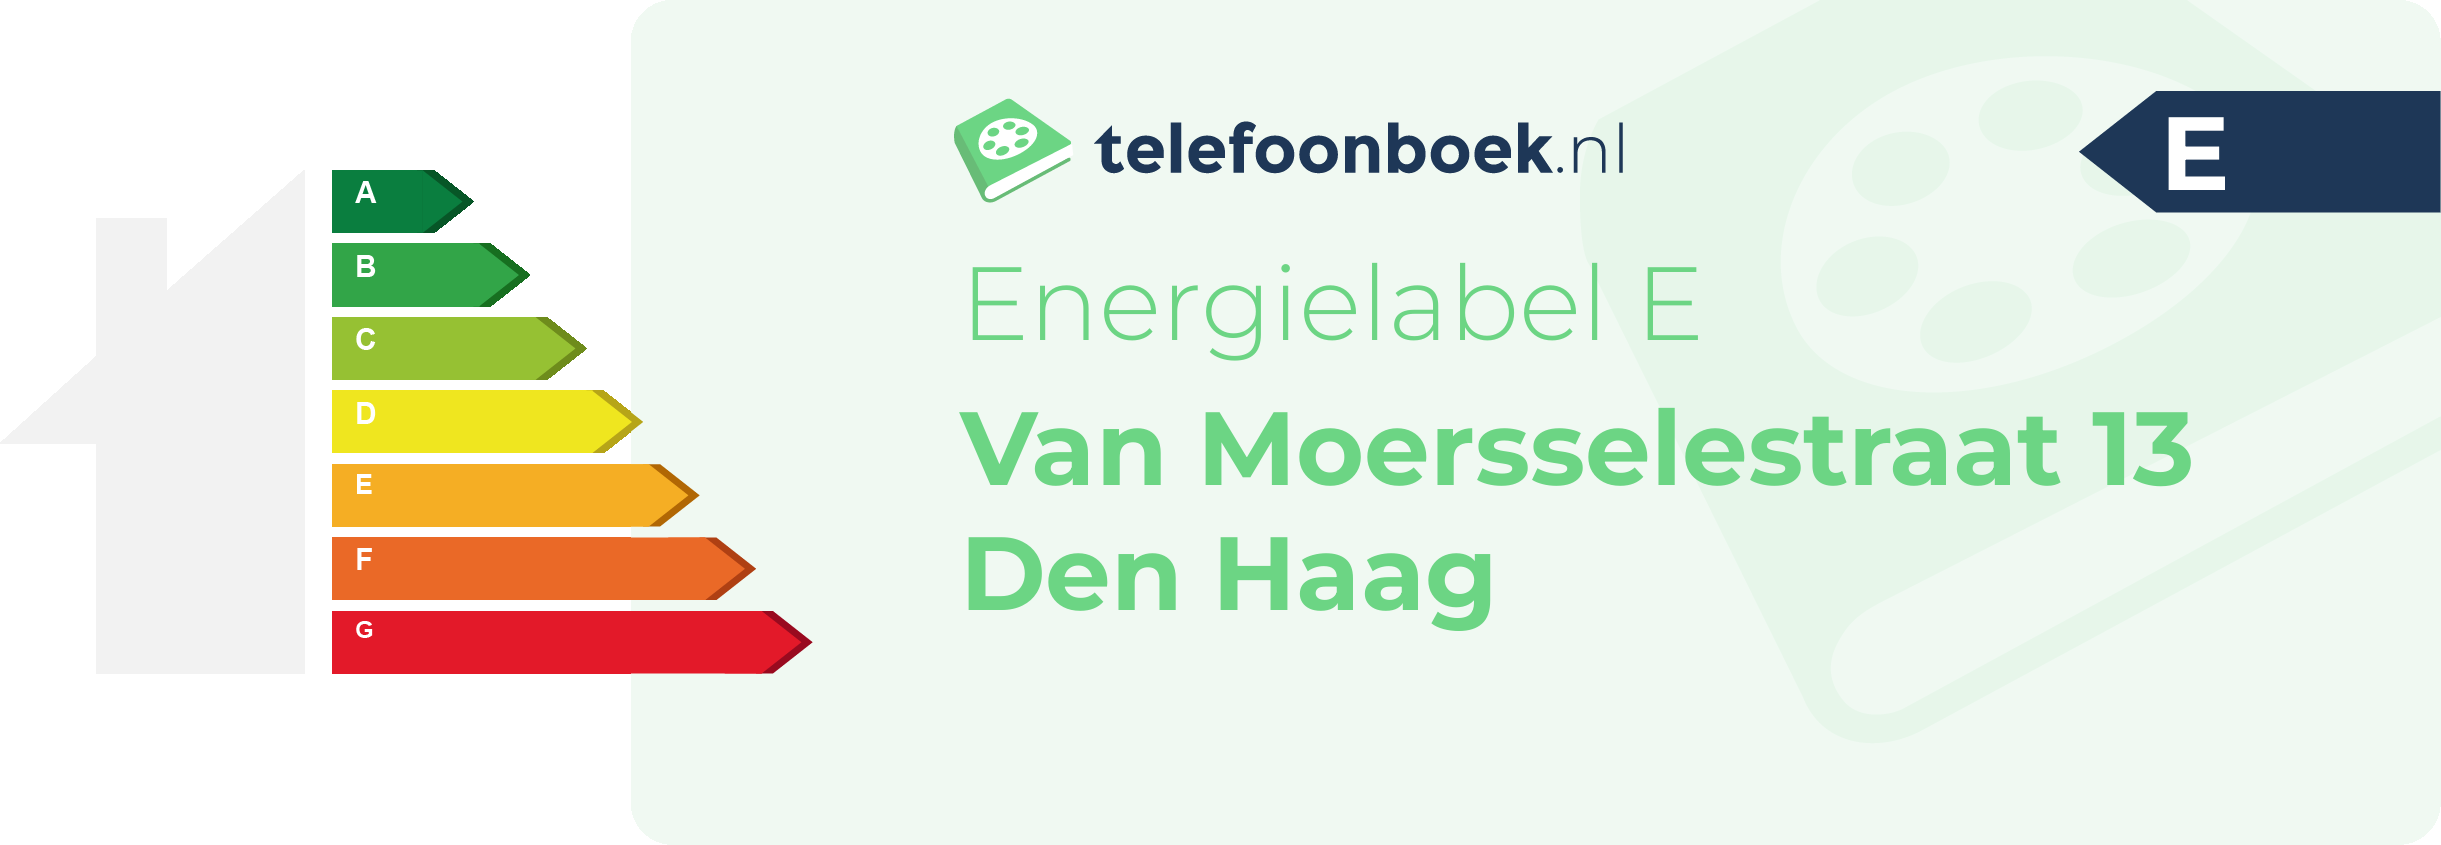 Energielabel Van Moersselestraat 13 Den Haag